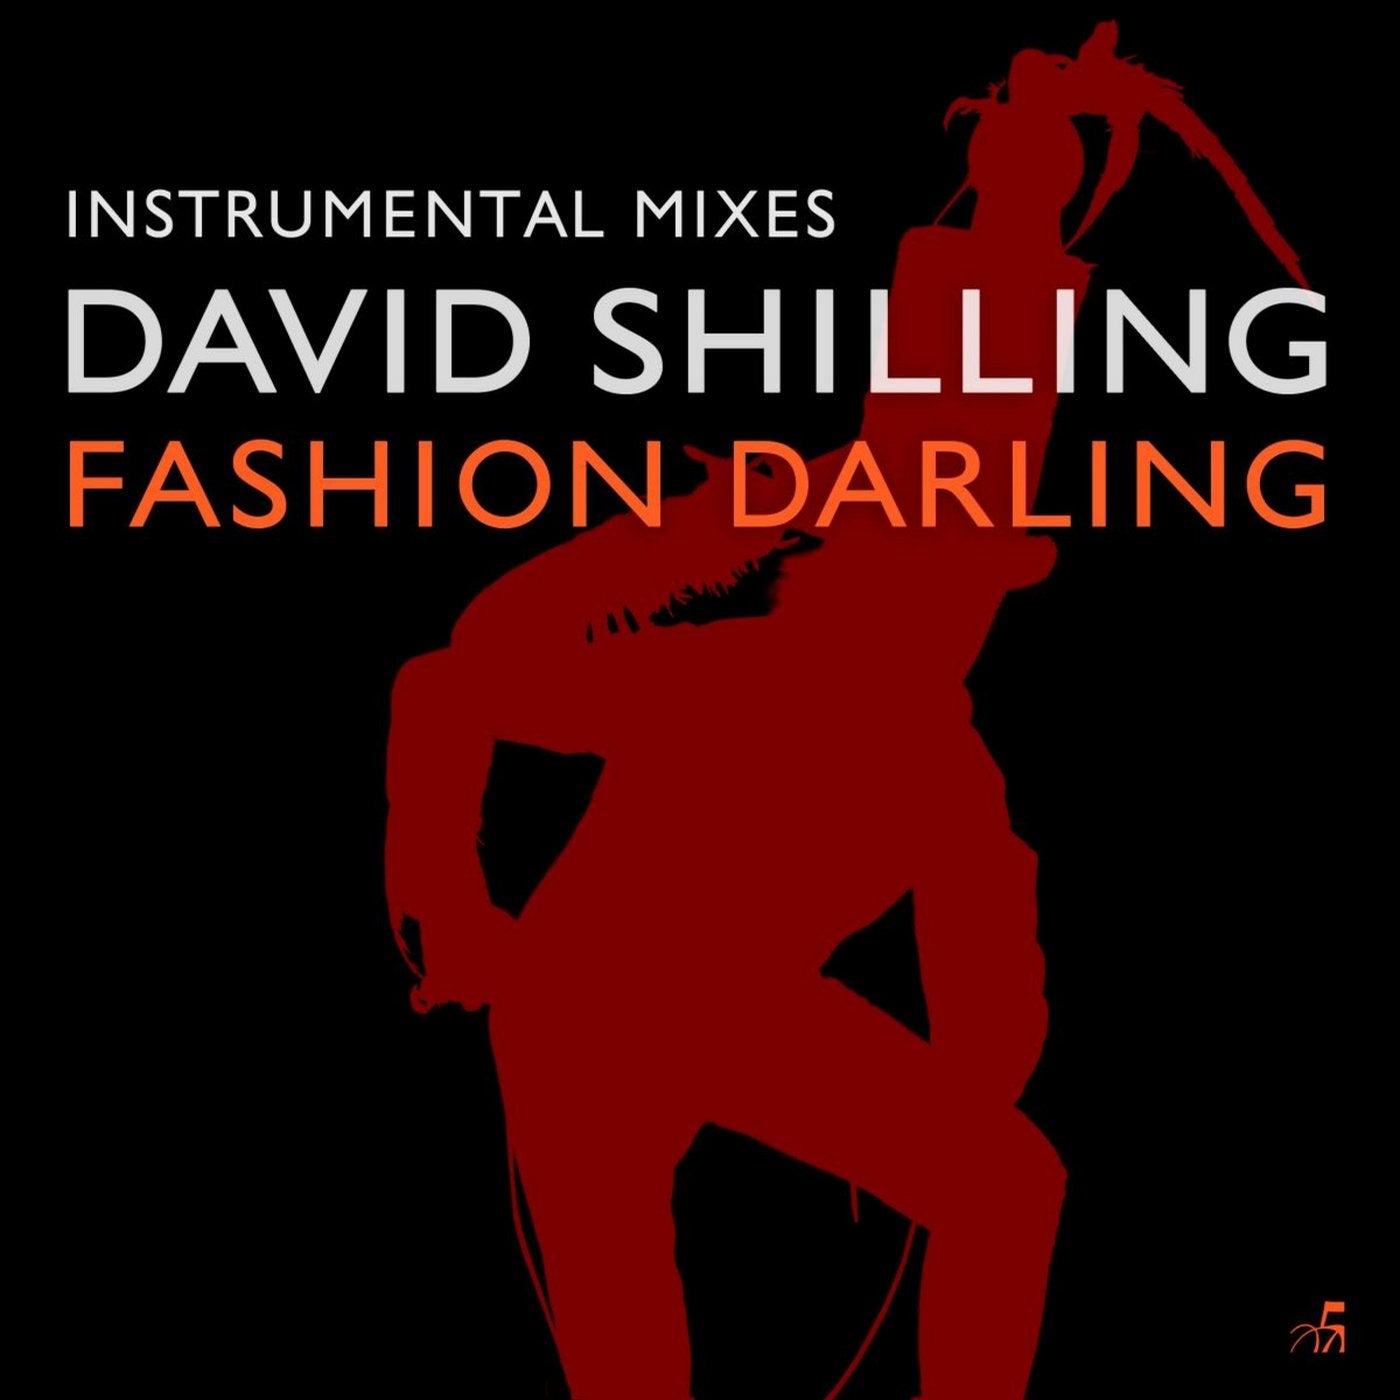 Fashion Darling